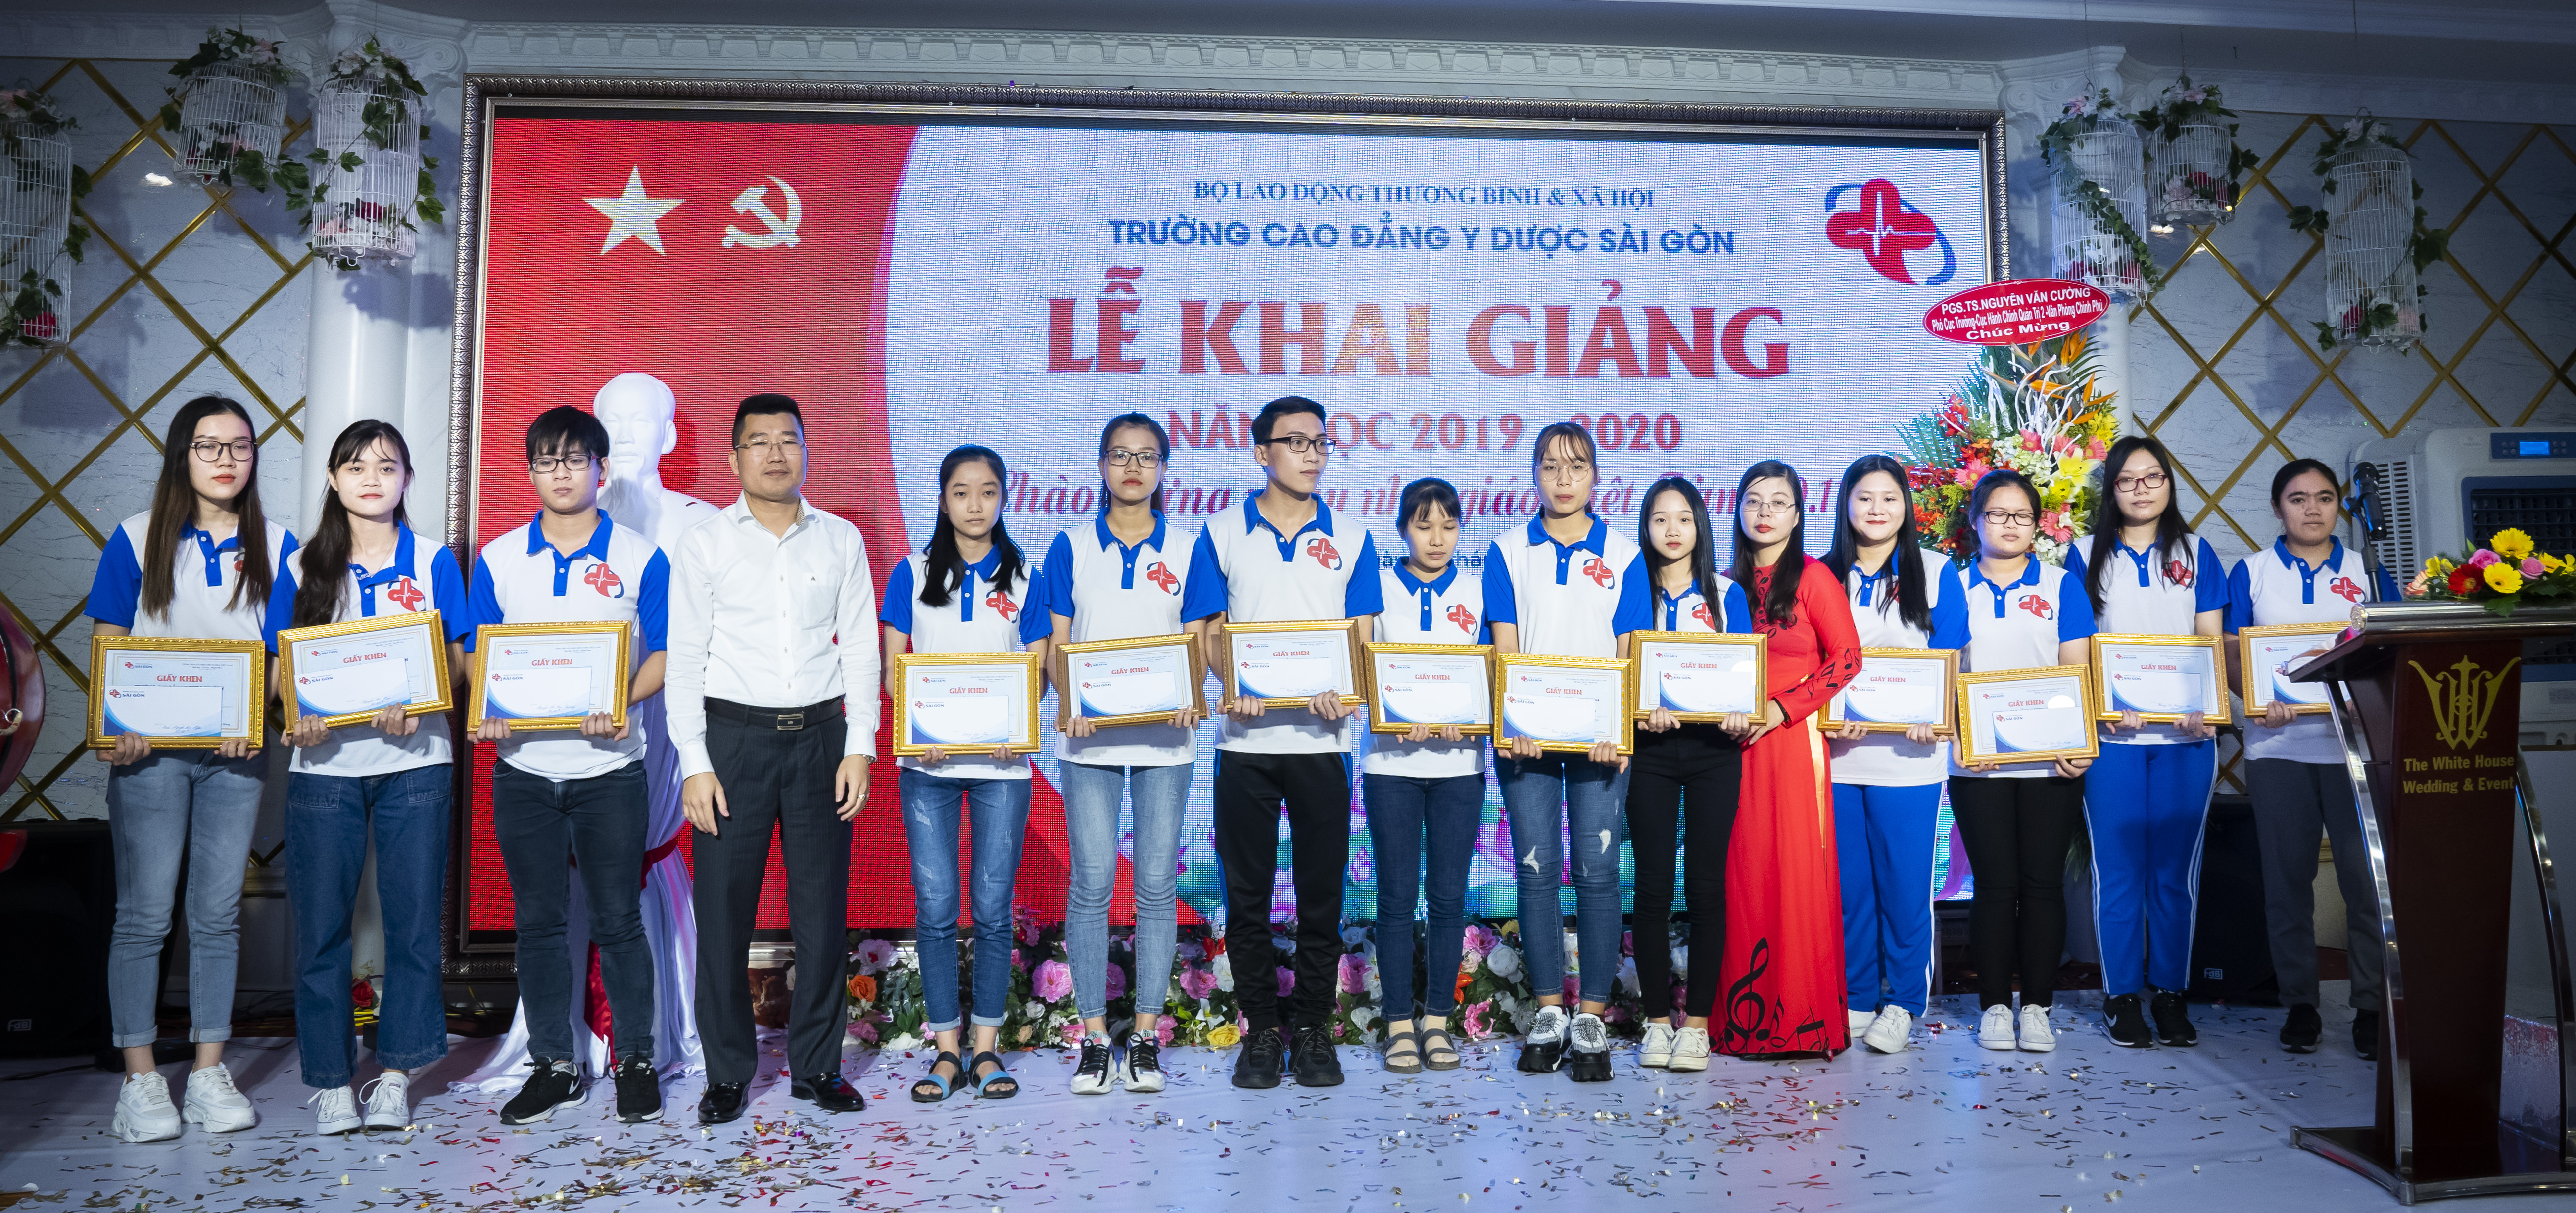 Cô Phó hiệu trưởng Nguyễn Thị Nhàn và thầy giáo Nguyễn Văn Liên lên trao thưởng cho các em sinh viên K11